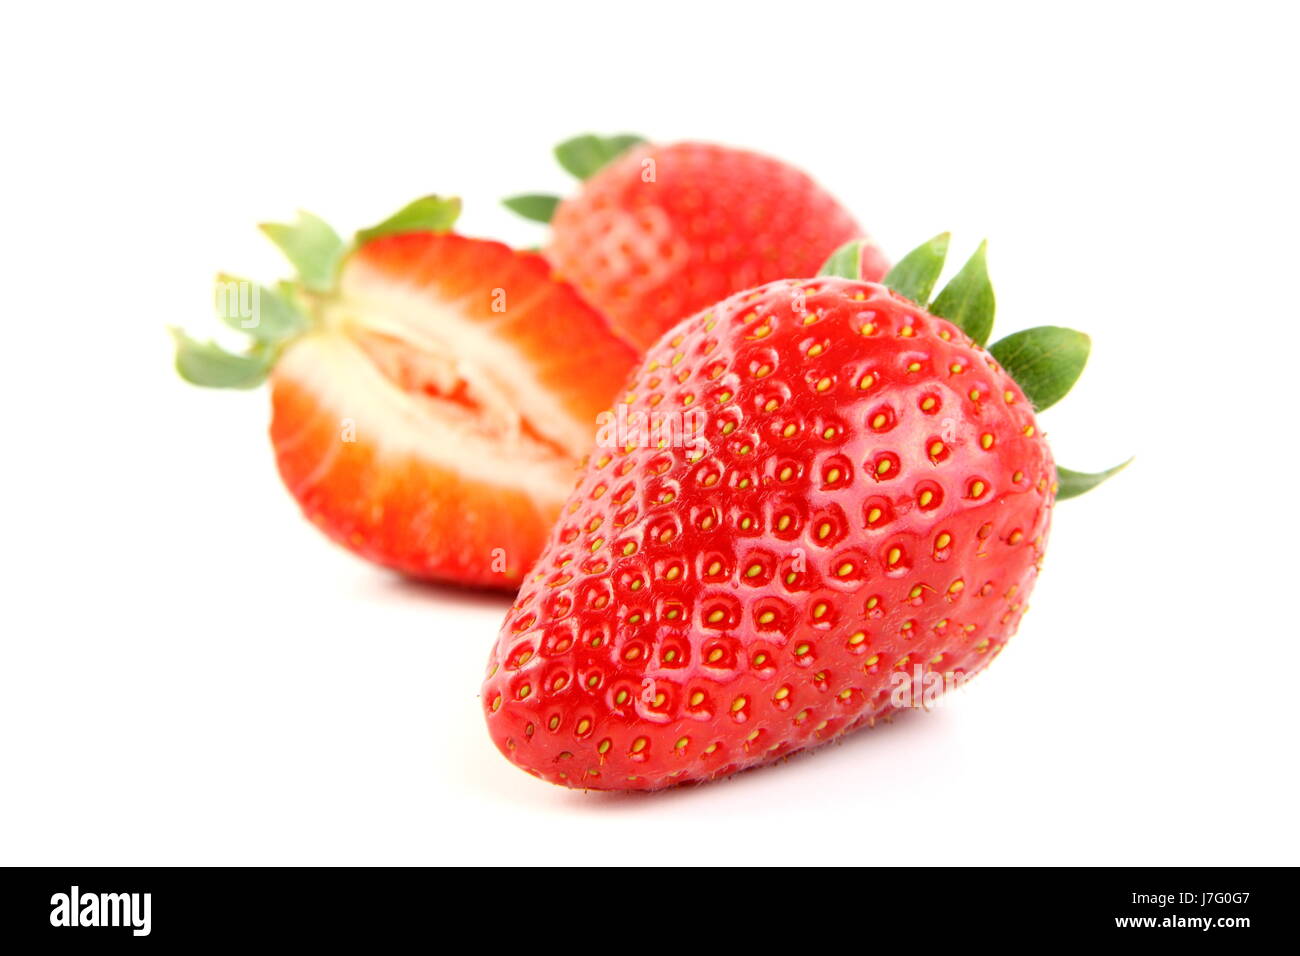 strawberry,strawberries Stock Photo